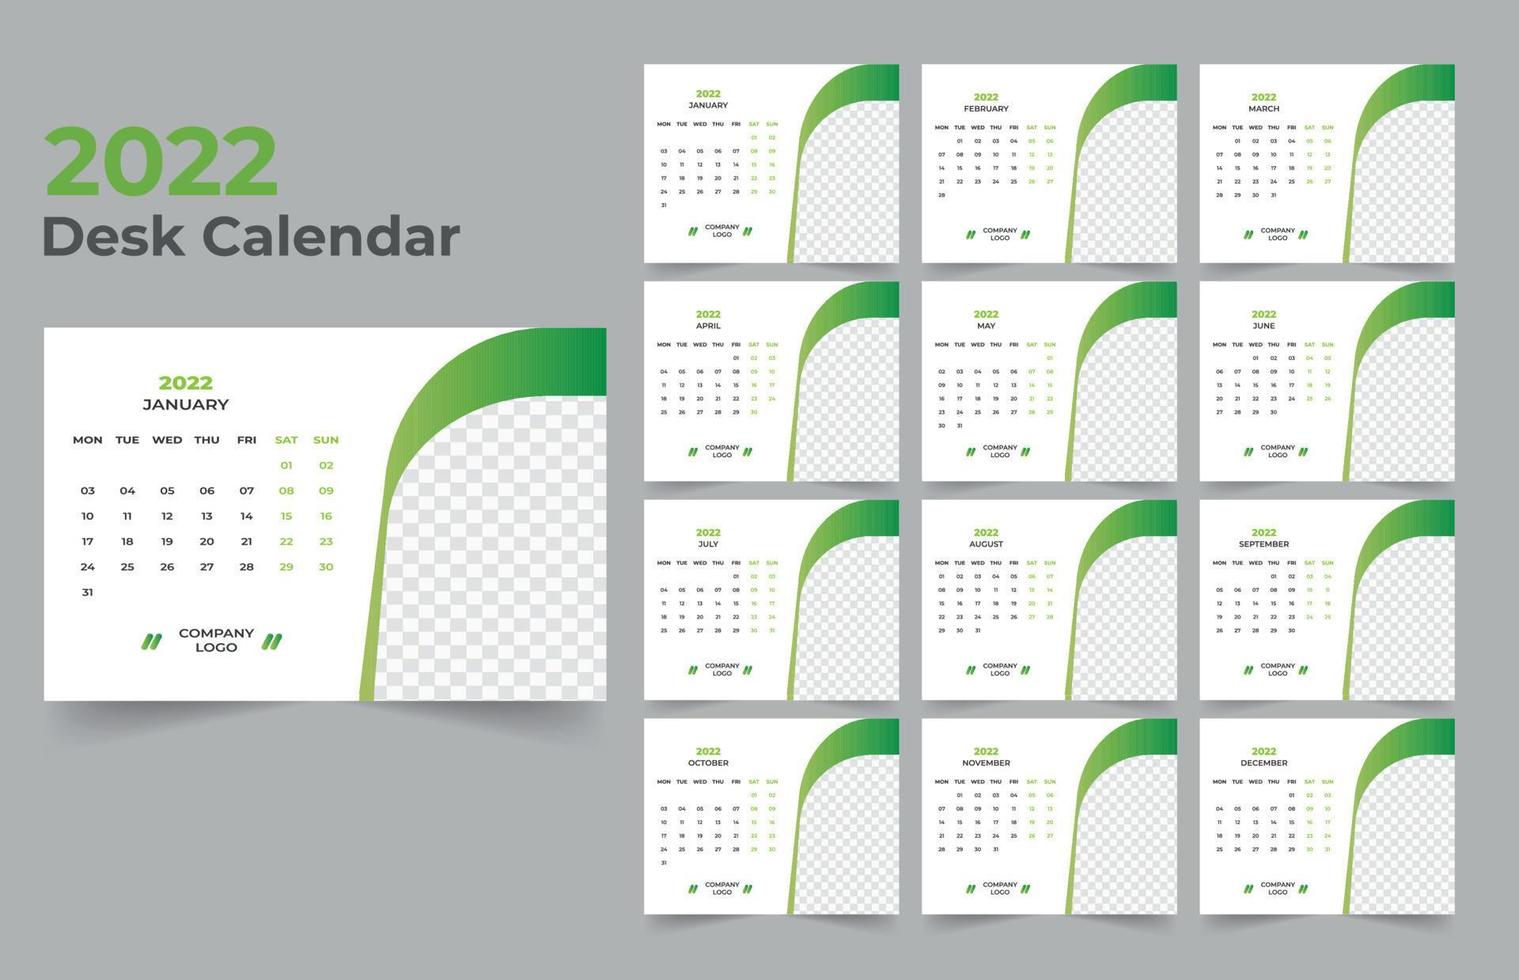 Desk calendar design 2022 vector